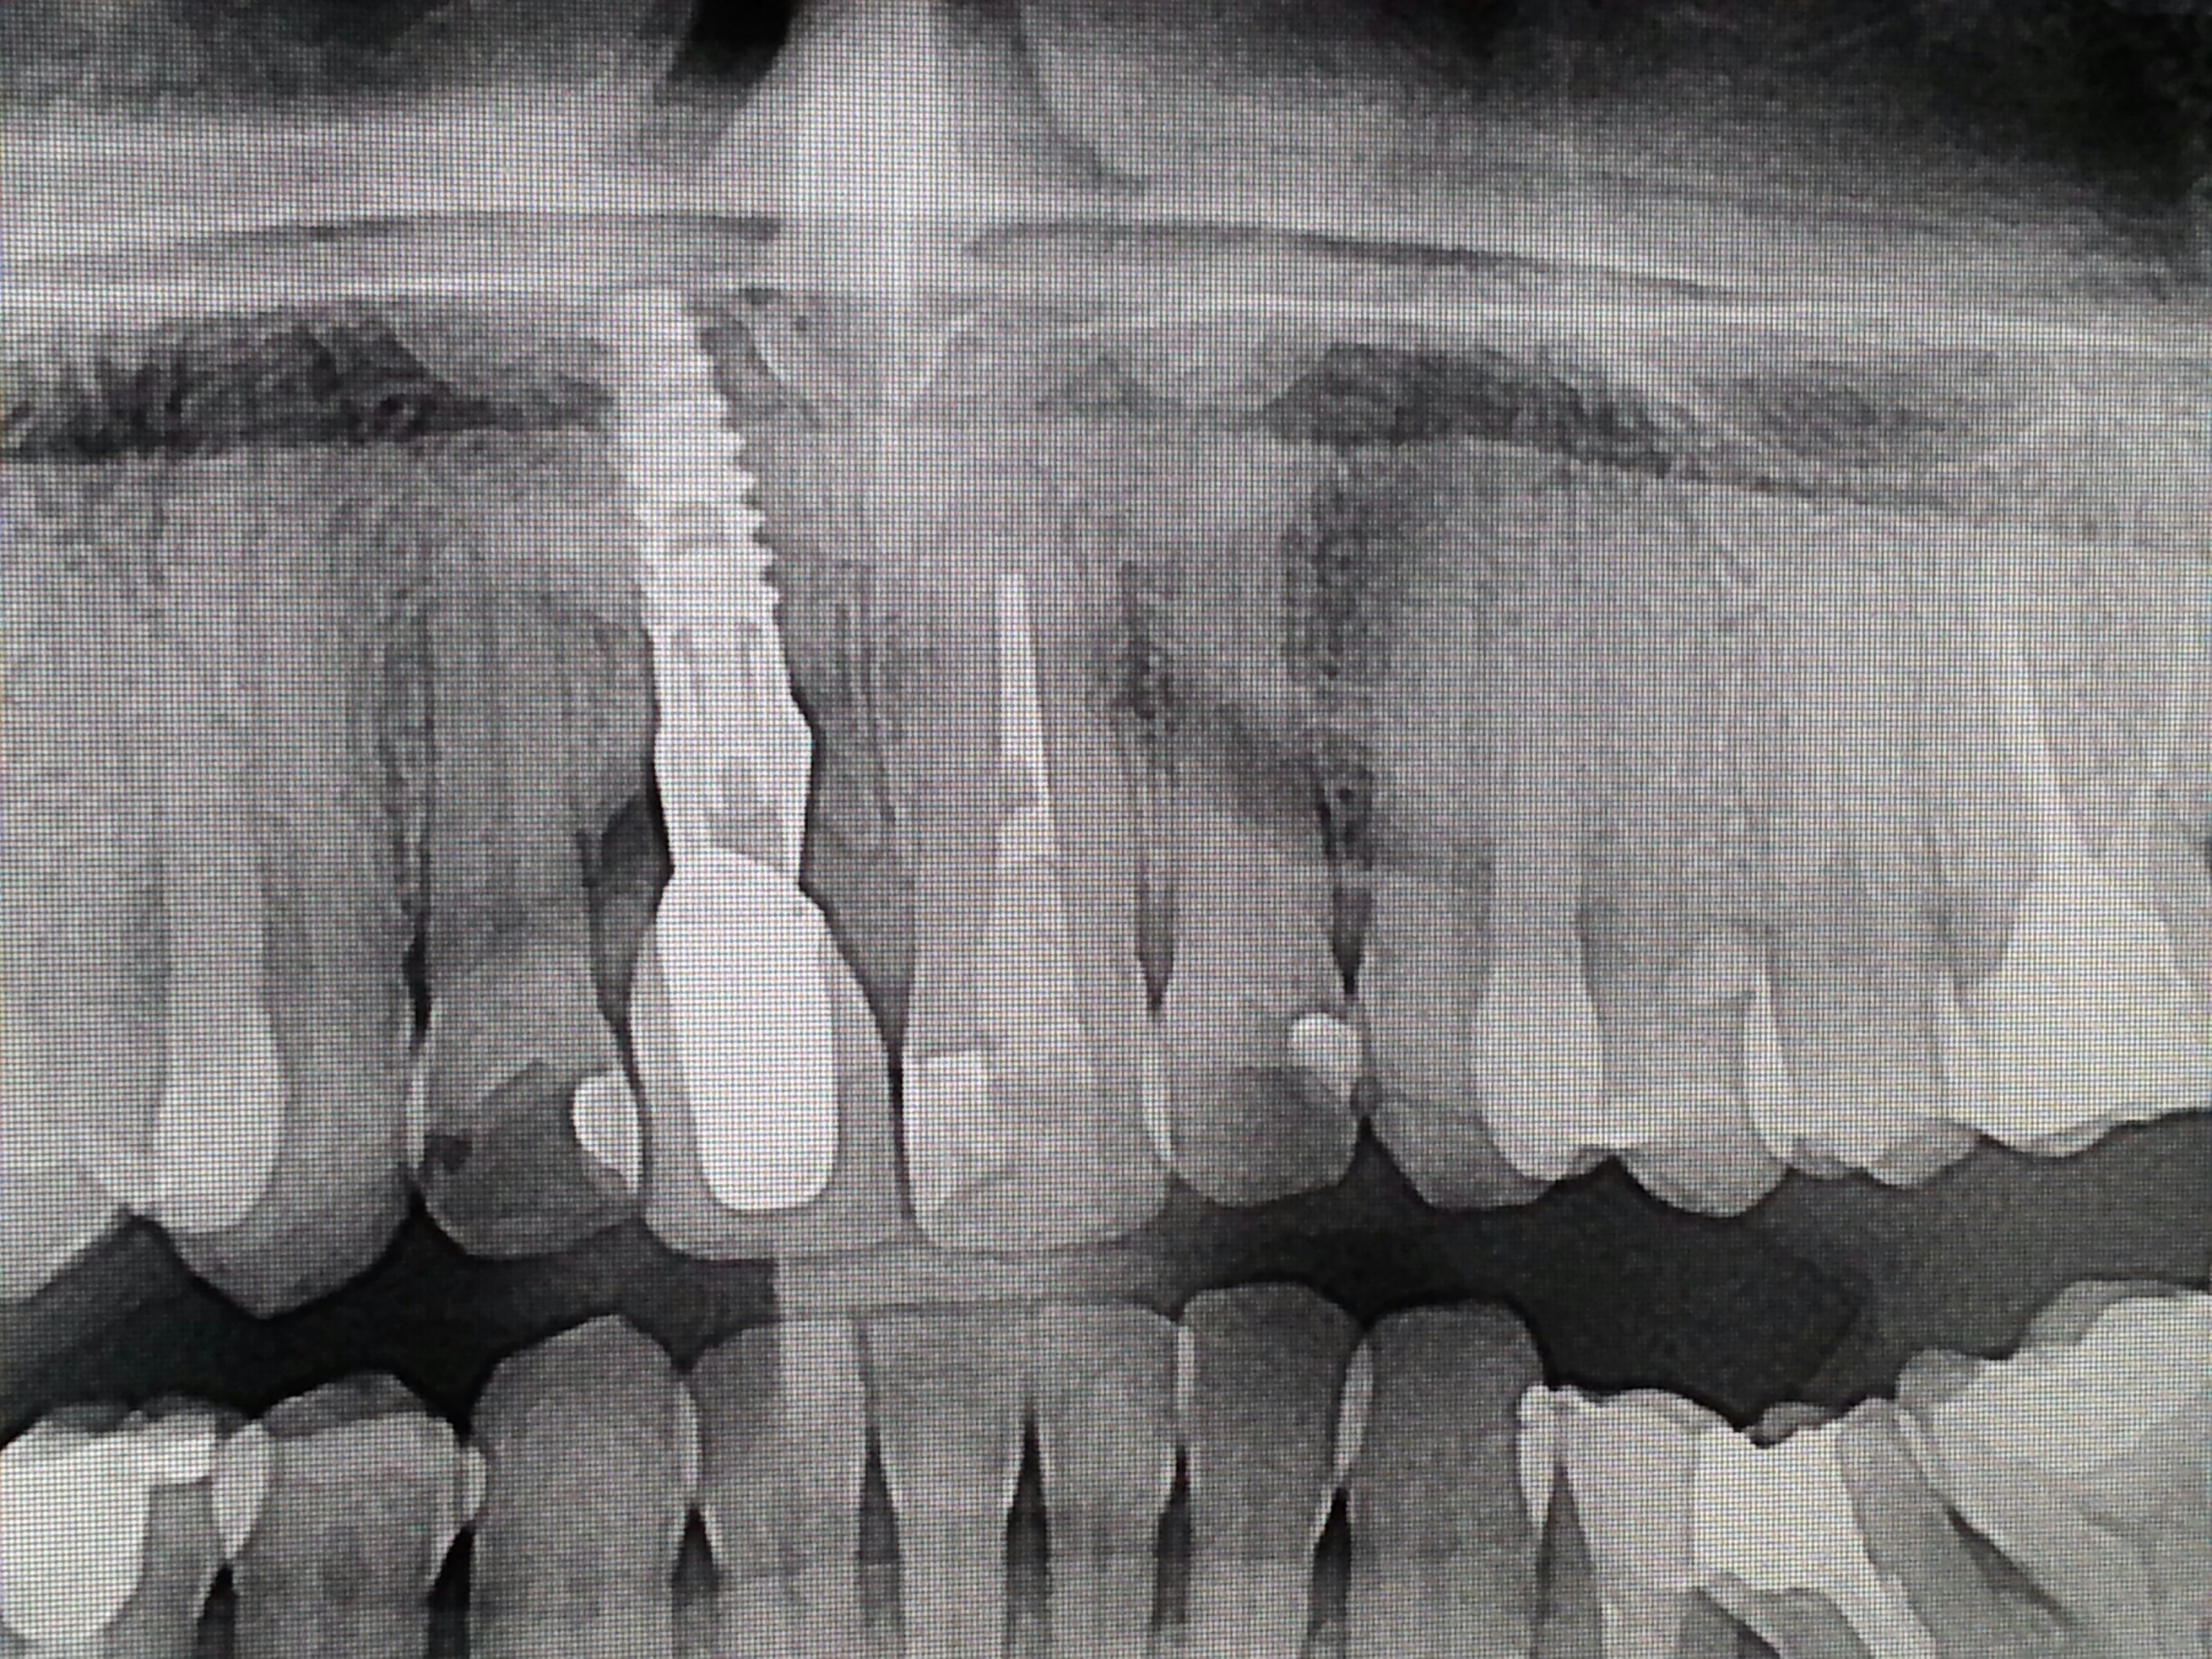 Ho una sorta di dolore fastidio al dente incisivo superiore